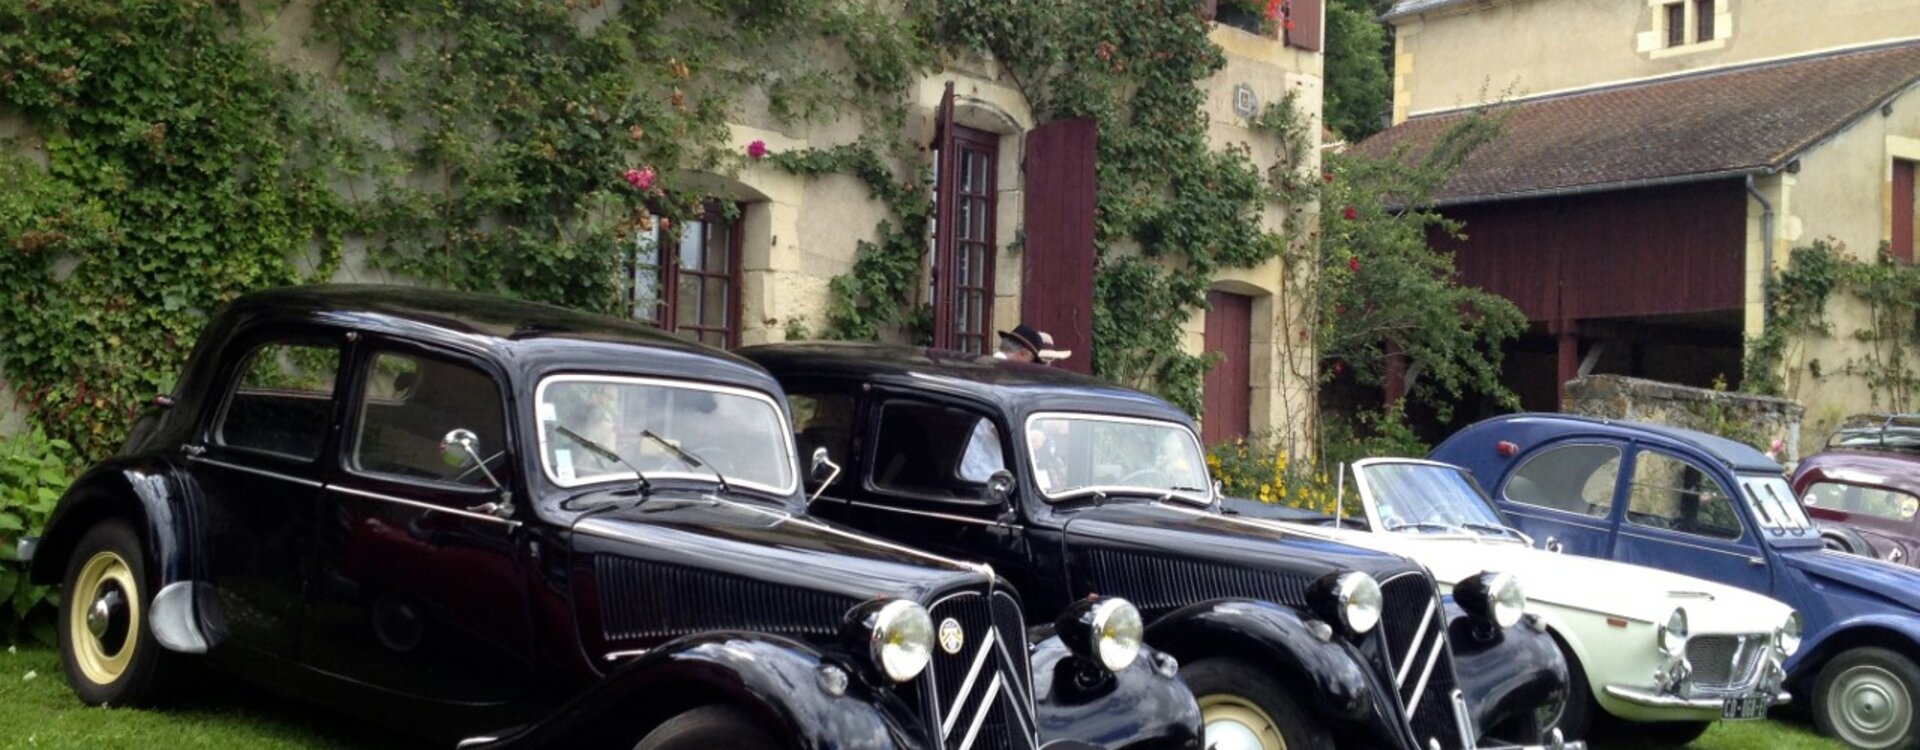 Rendez vous des Anciennes voiture à Apremont sur Allier dans le Cher en région Centre-Val de Loire